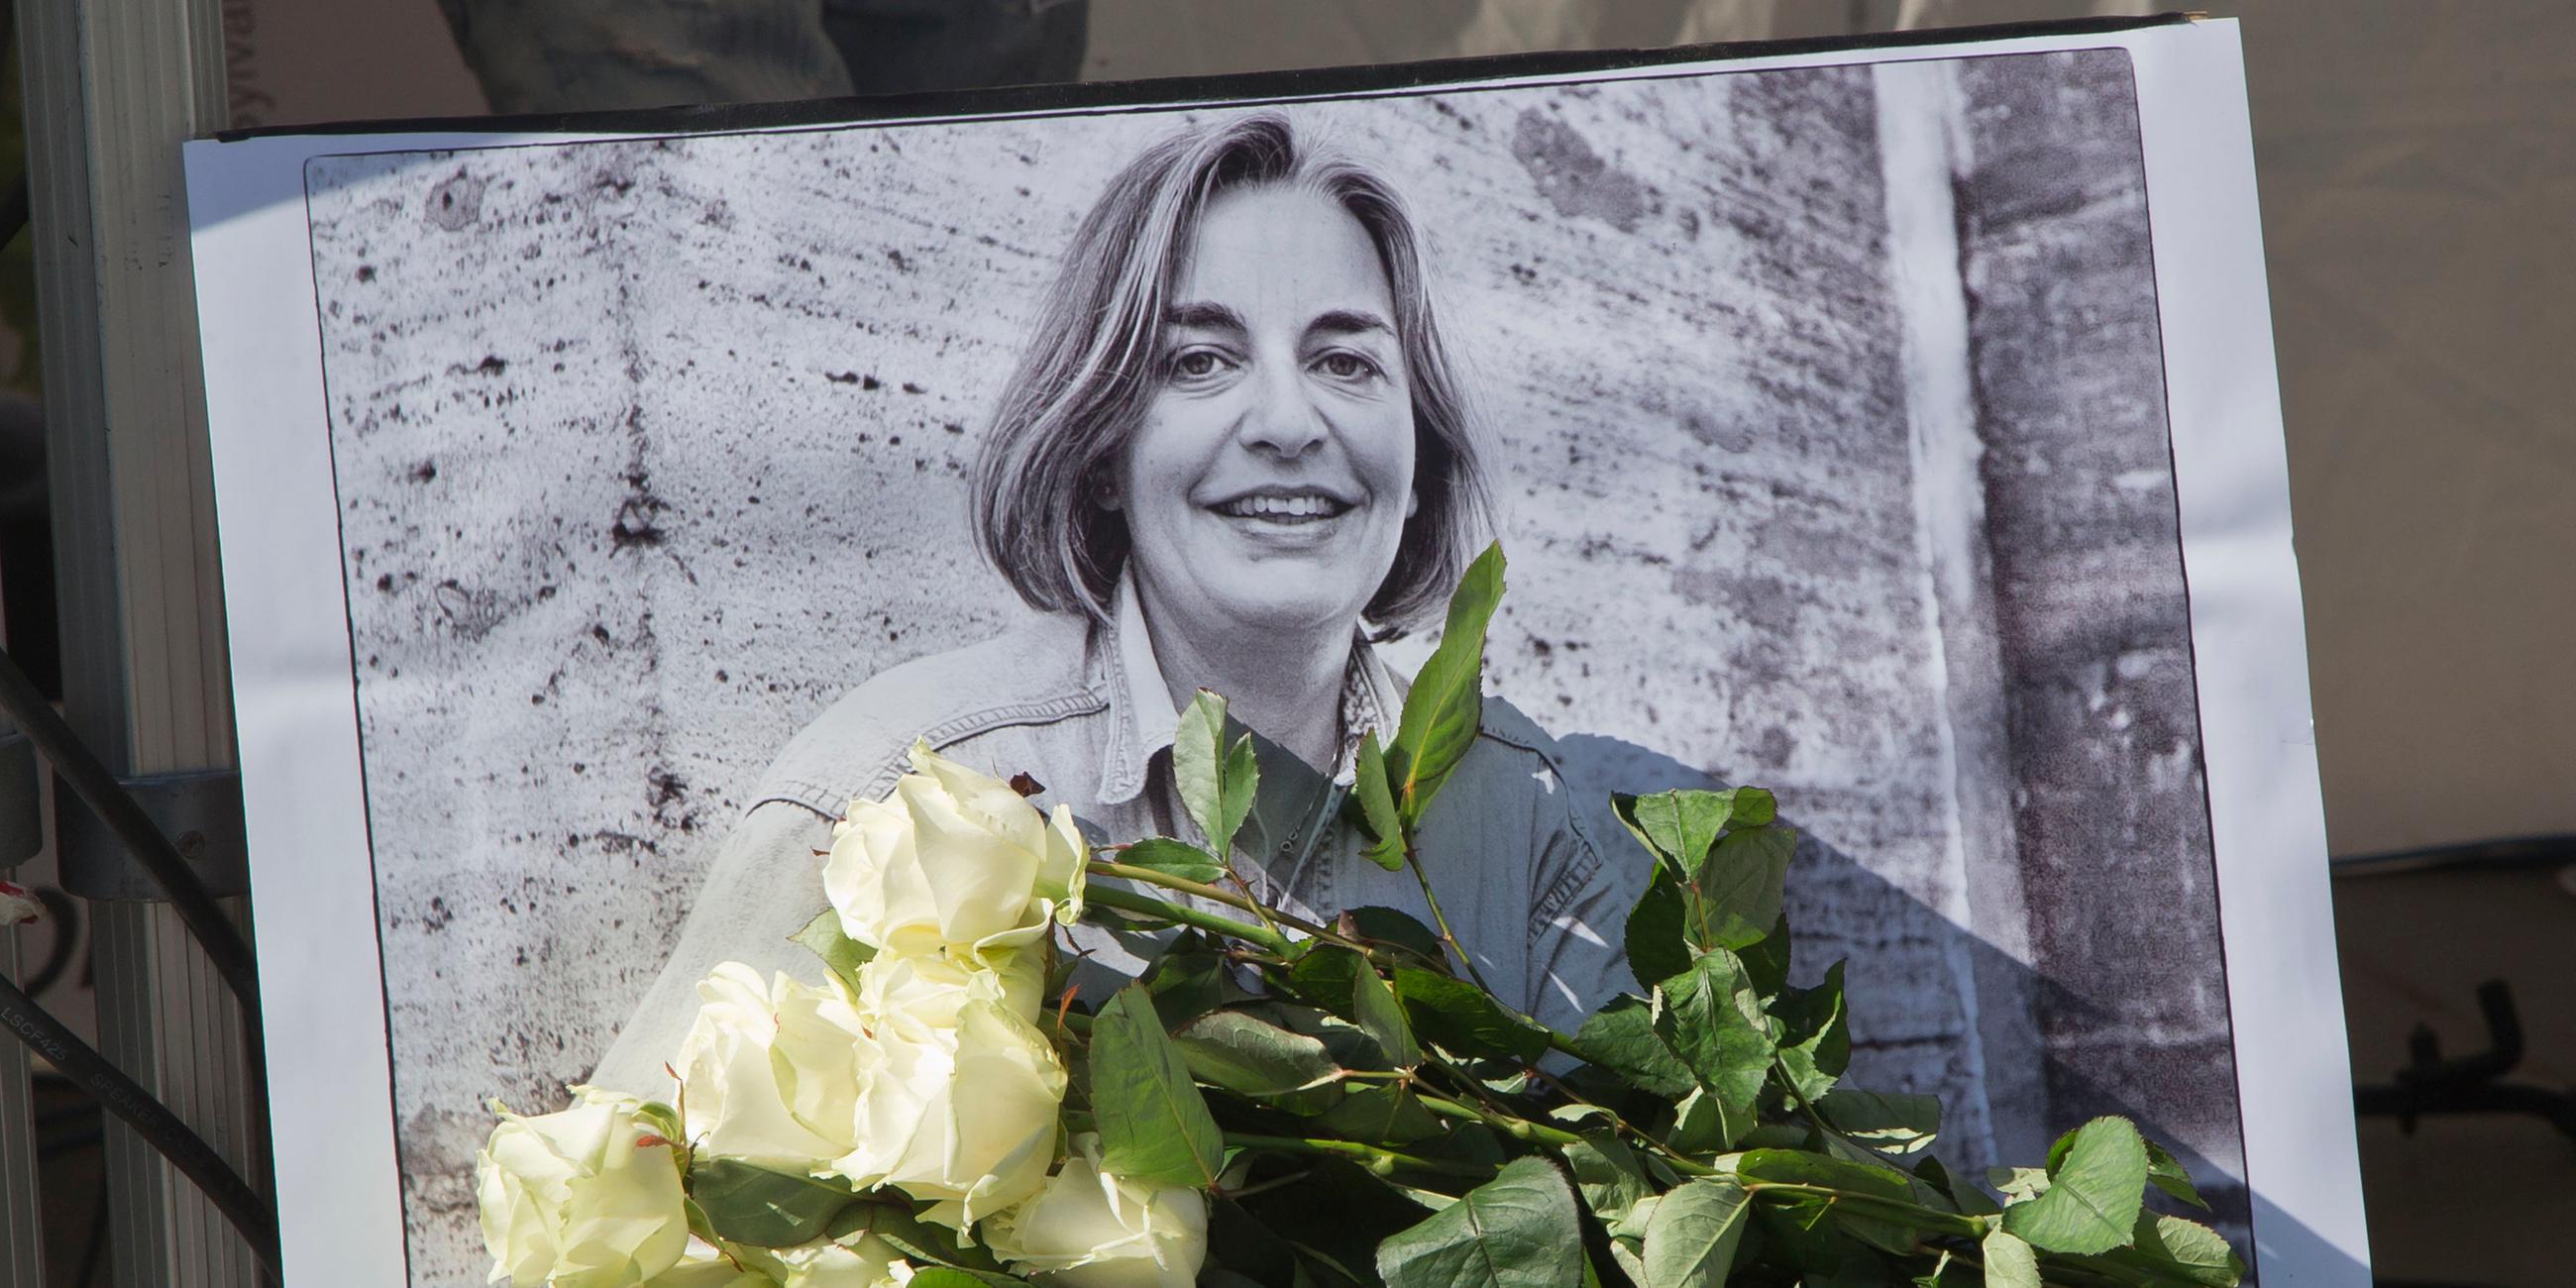 Rosen liegen vor einem Bild der Fotografin Anja Niedringhaus, 48, die am 4. April 2014 in Afghanistan getötet wurde.